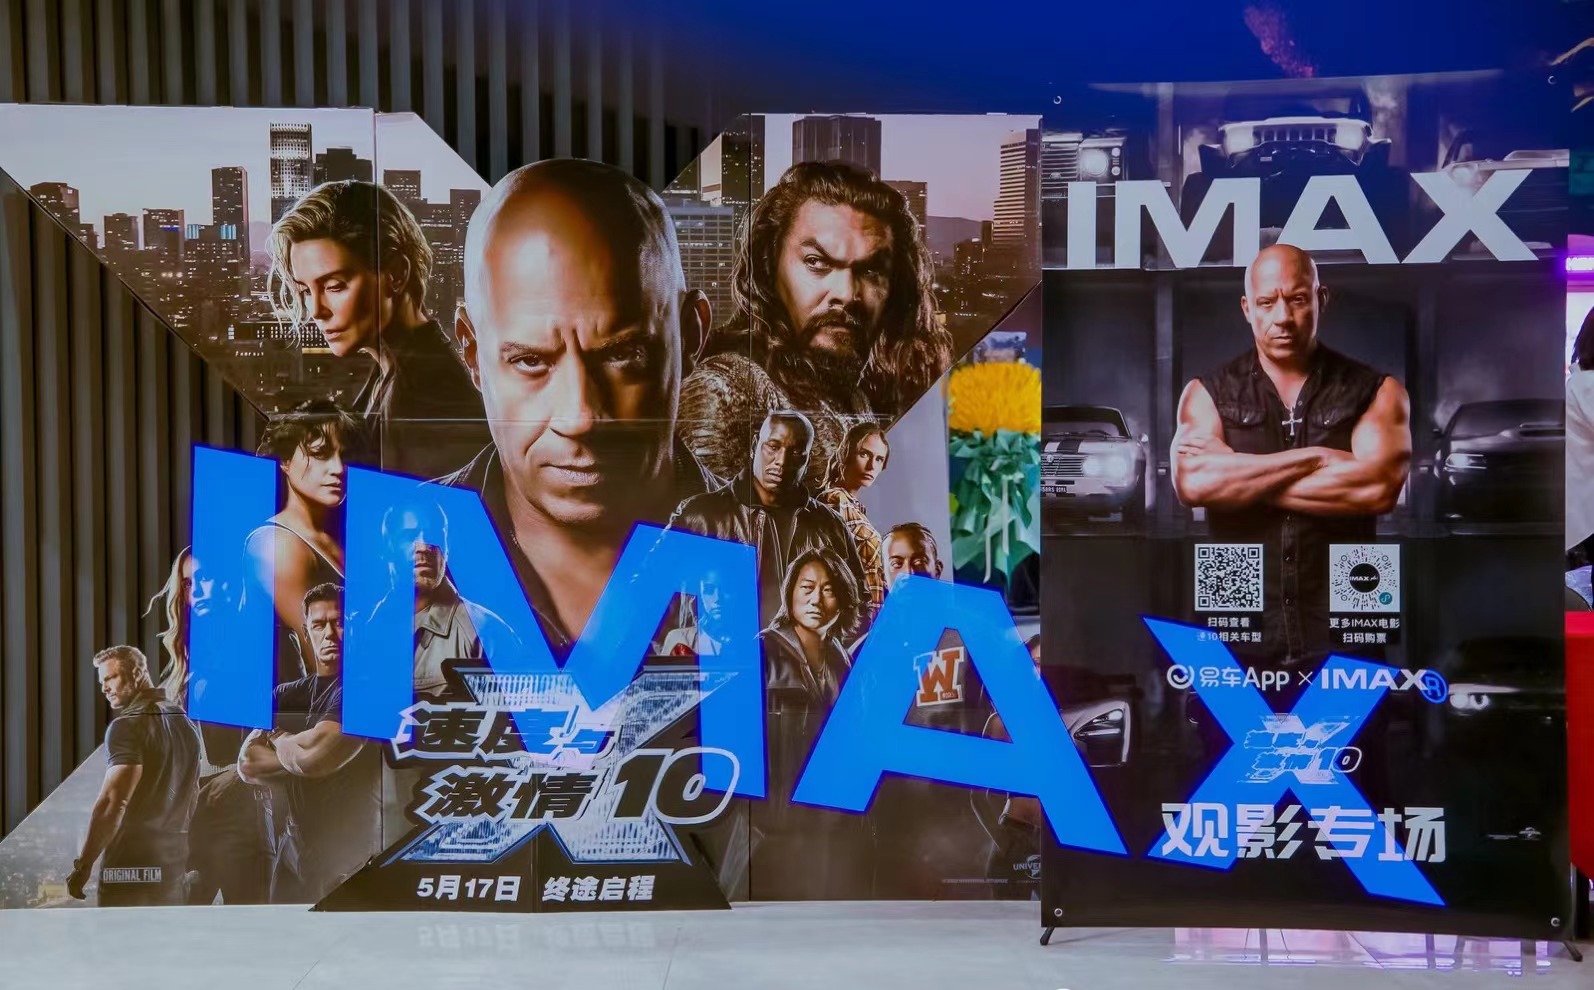  IMAX在京举行《速度与激情10》观影 观众盛赞炸裂过瘾“必看IMAX！”